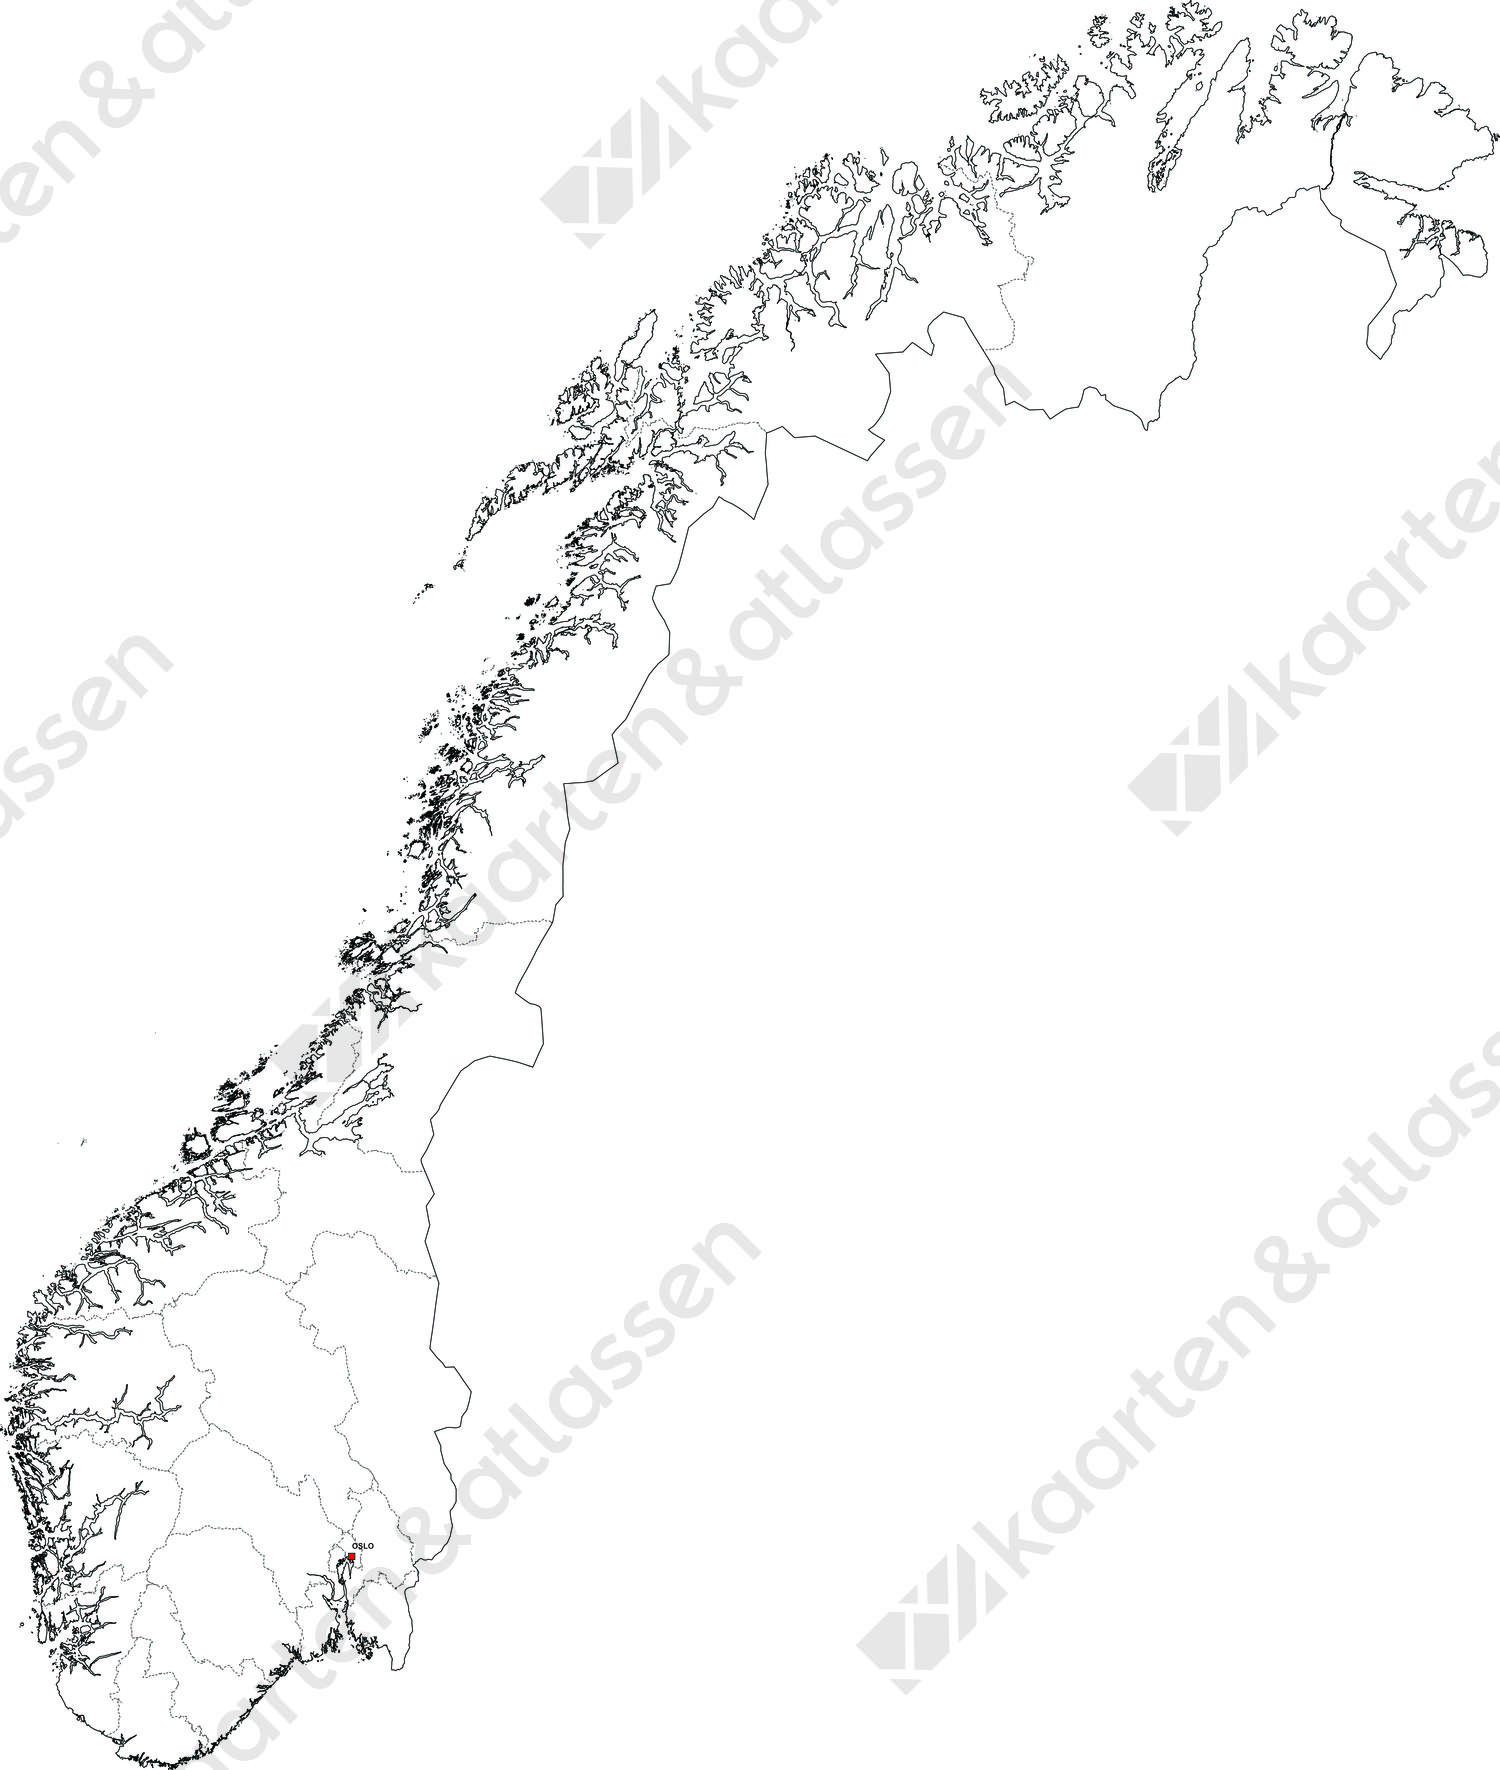 Gratis digitale kaart Noorwegen